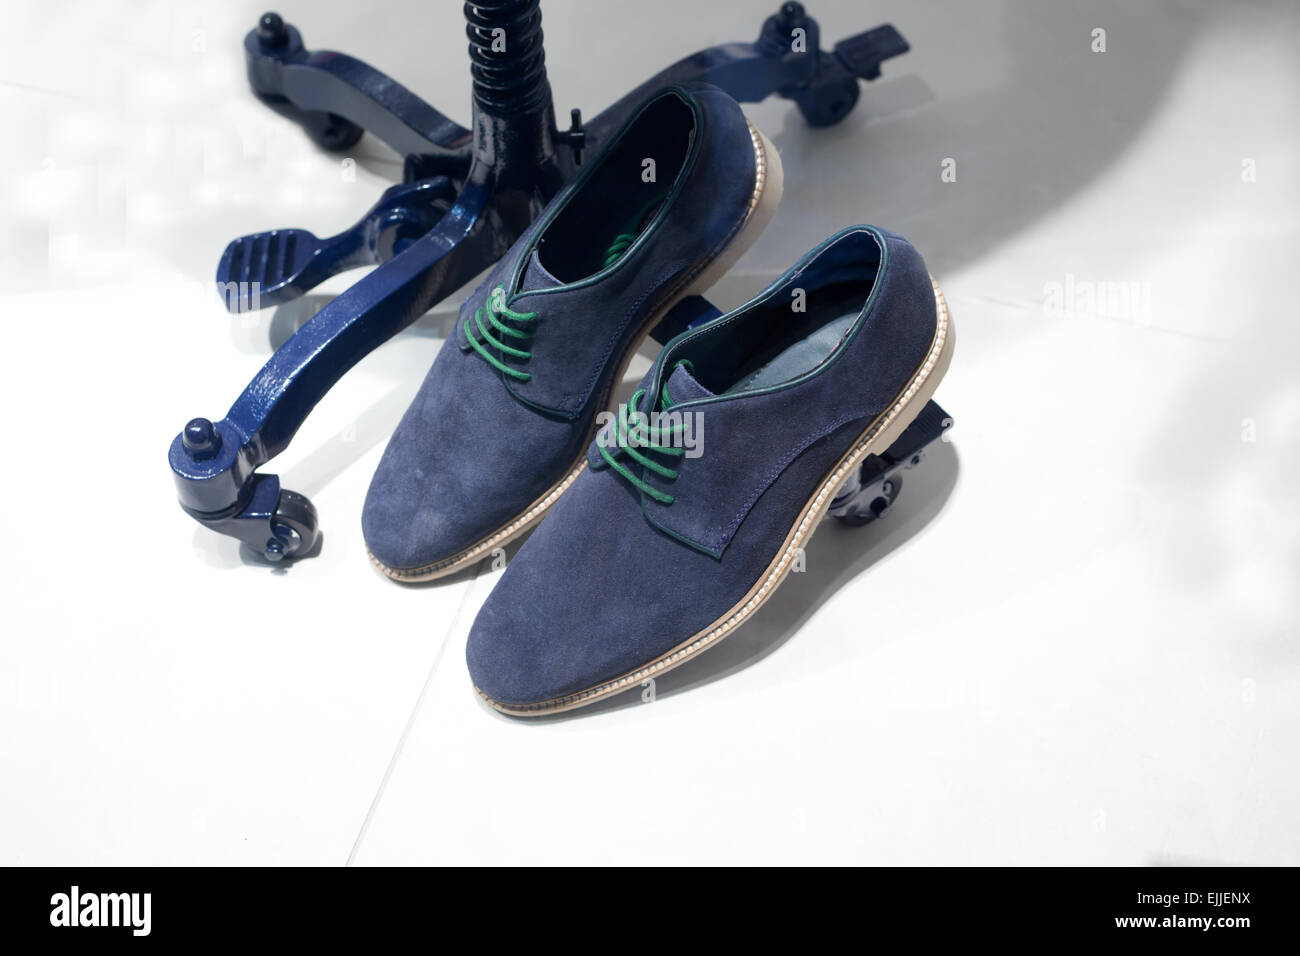 Blue Suede Shoes occasionnels sur manequin support métallique Banque D'Images